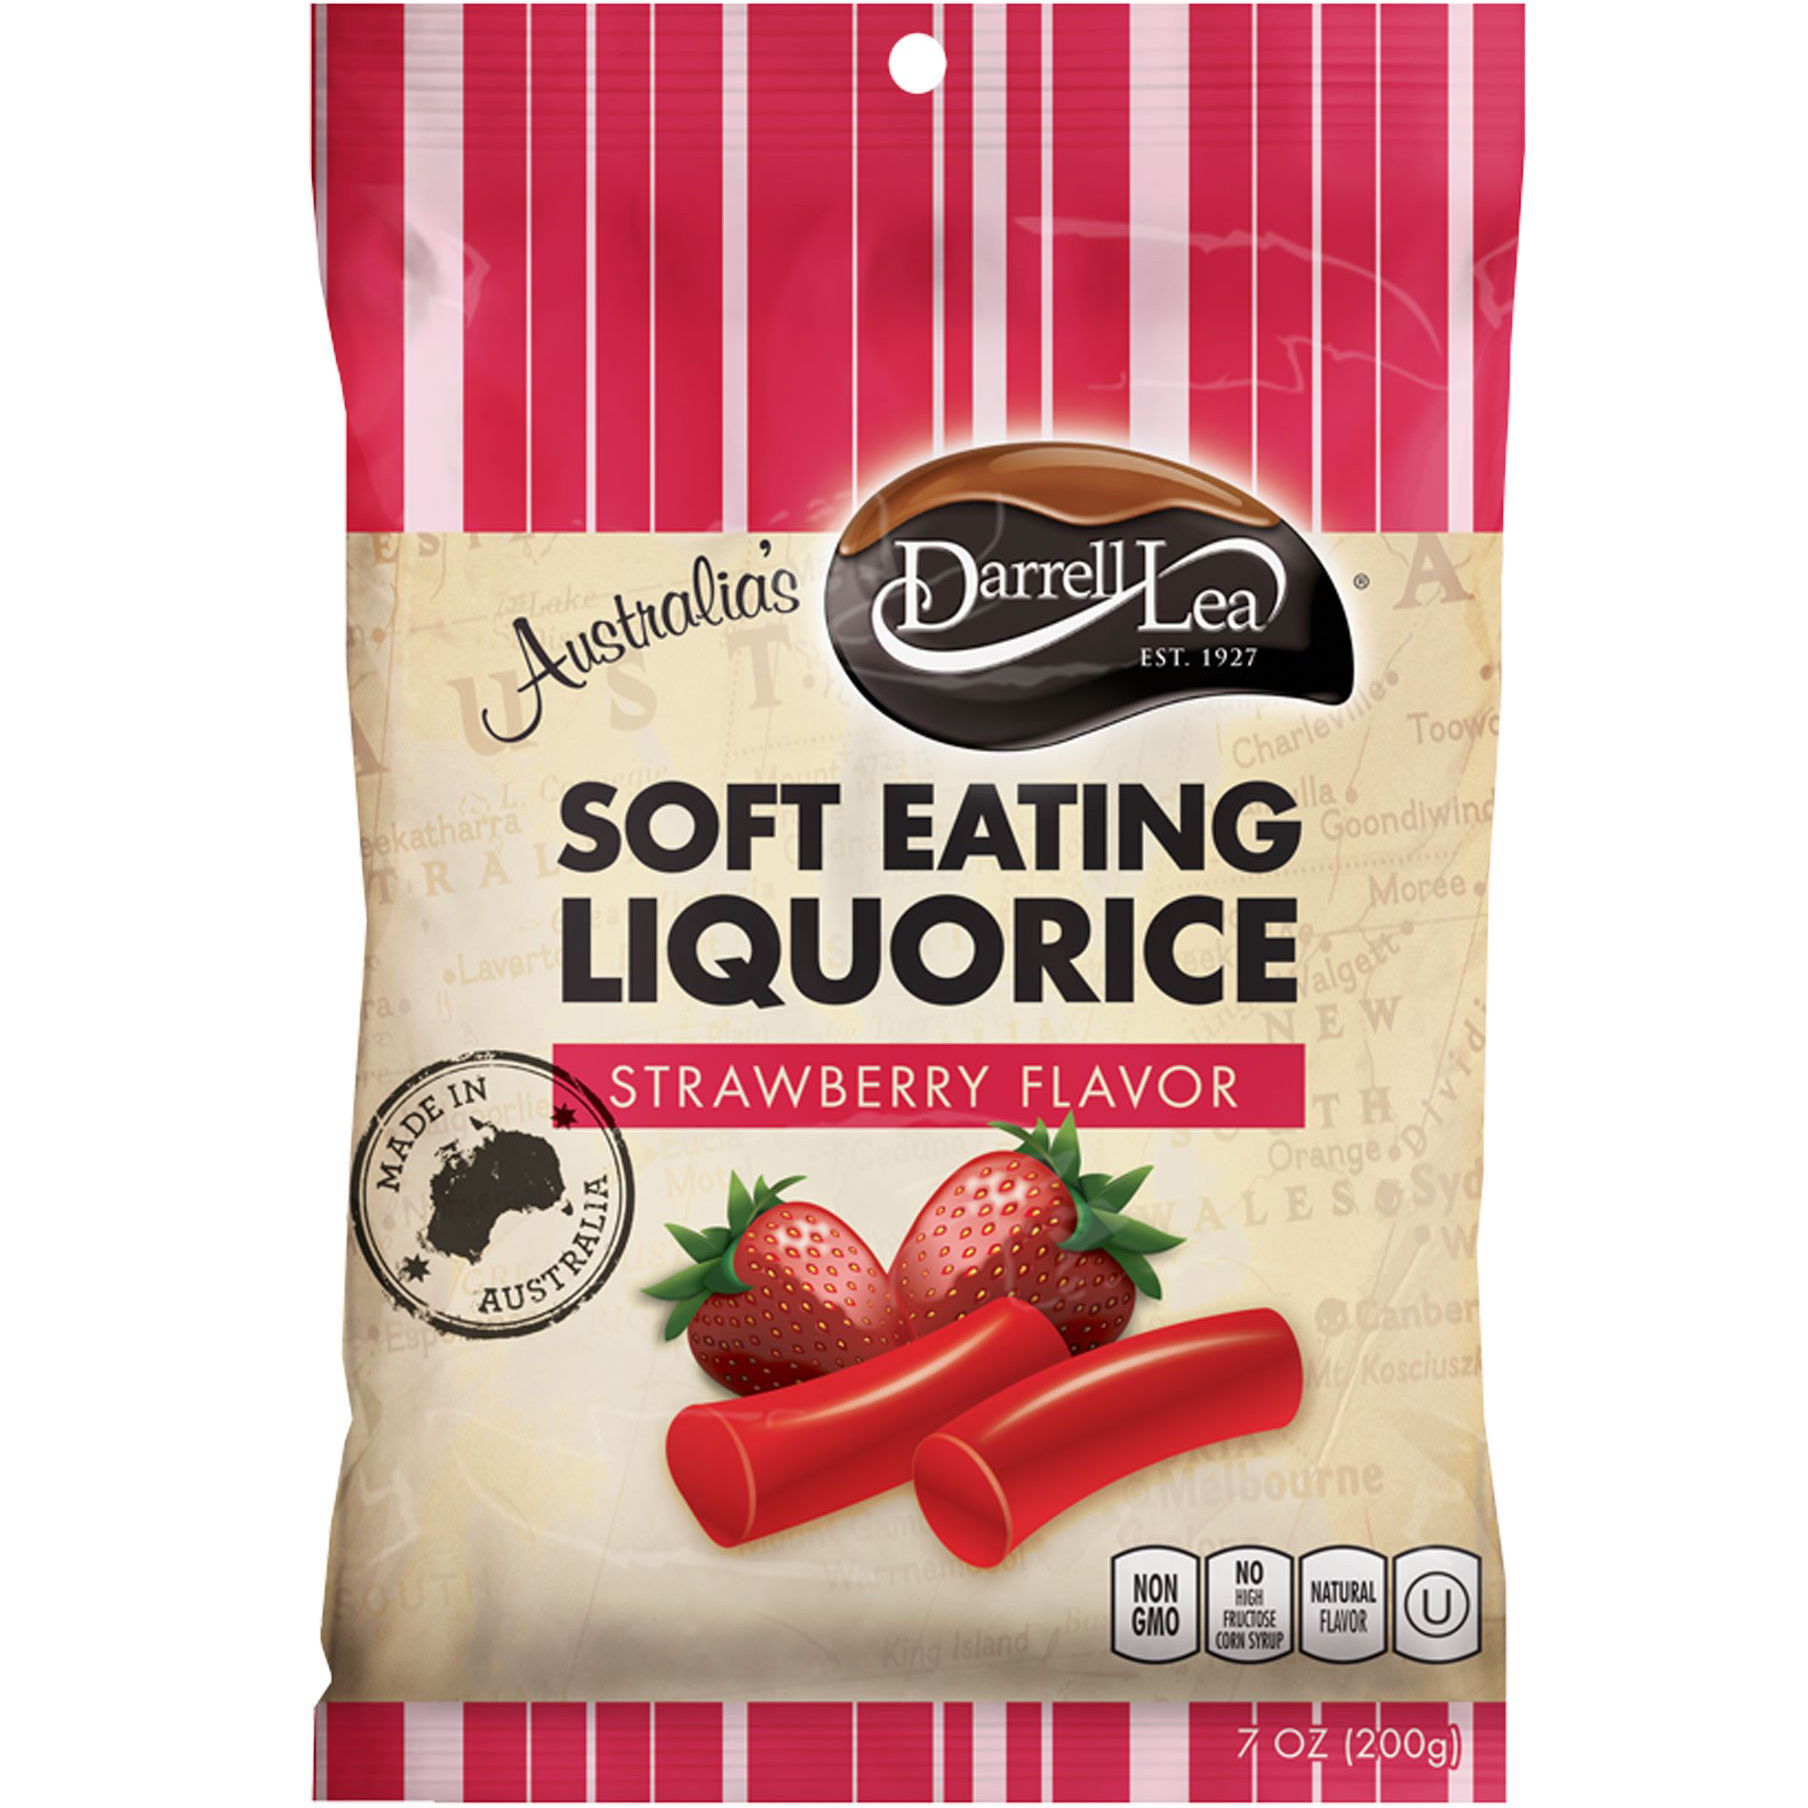 DARRELL LEA - SOFT EATING LIQUORICE - NON GMO - (Strawberry) - 7oz